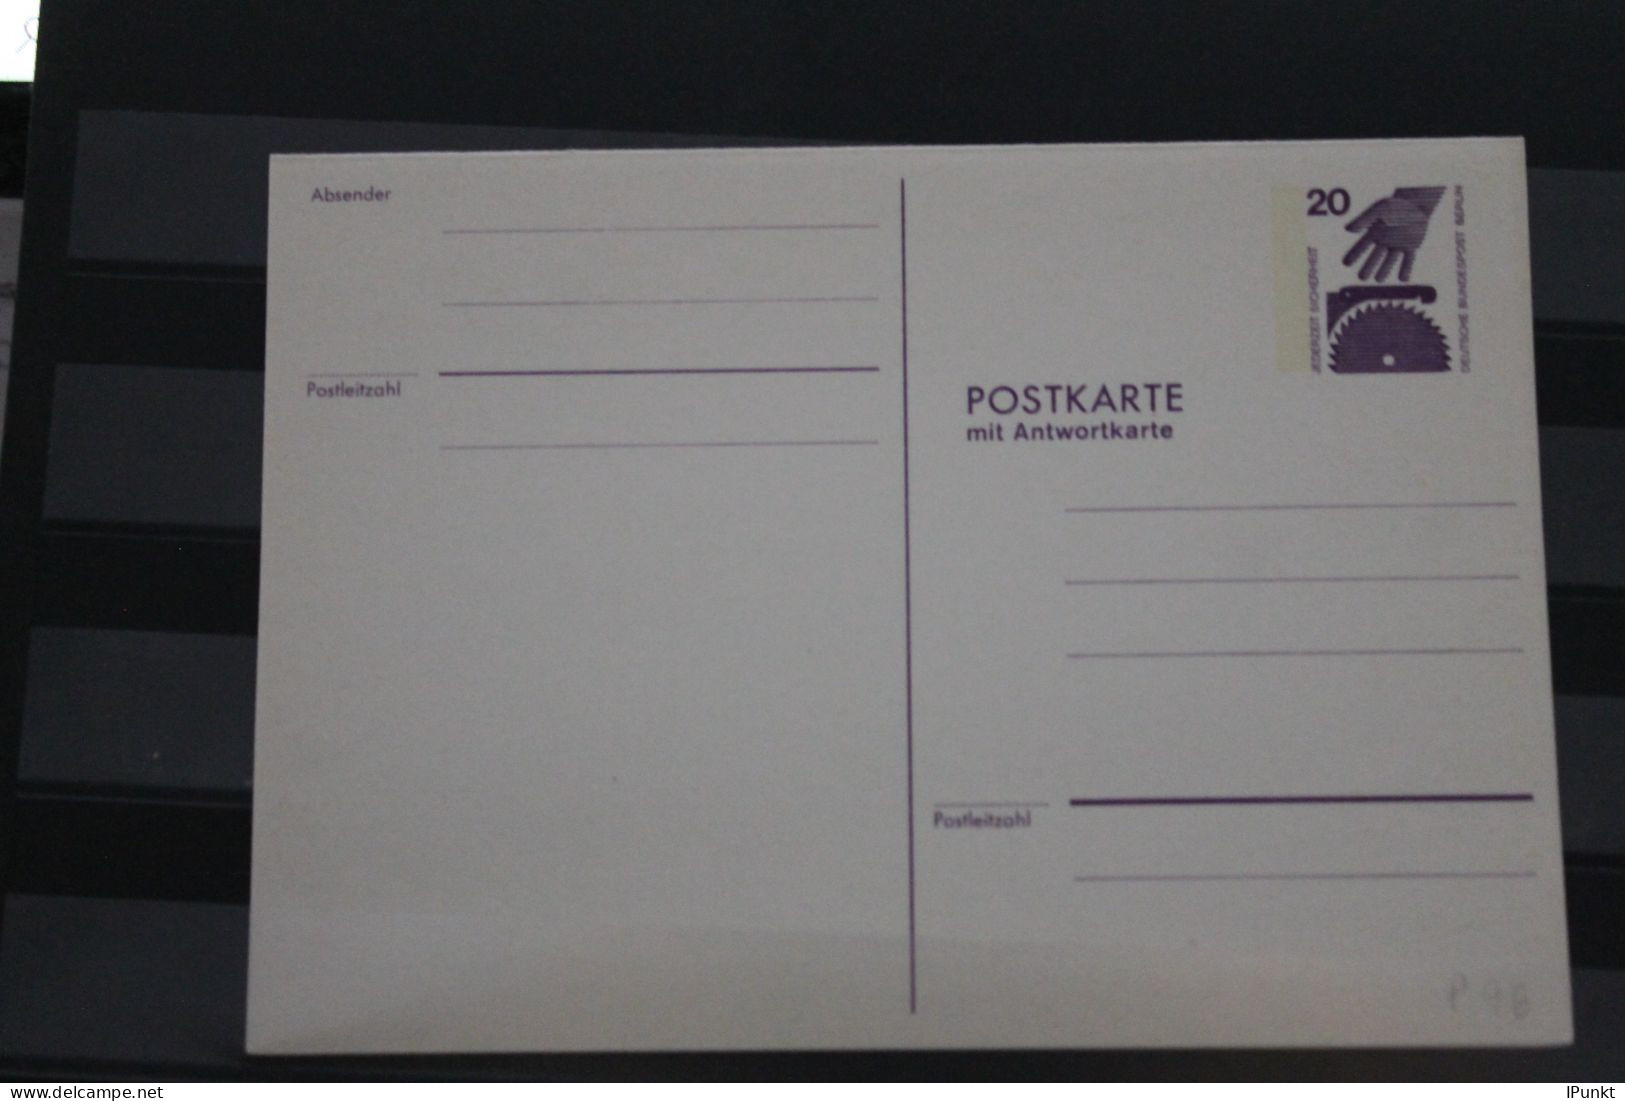 Berlin 1974; Ganzsache Unfallverhütung Postkarte Mit Antwortkarte   P 96; Ungebraucht - Postcards - Mint